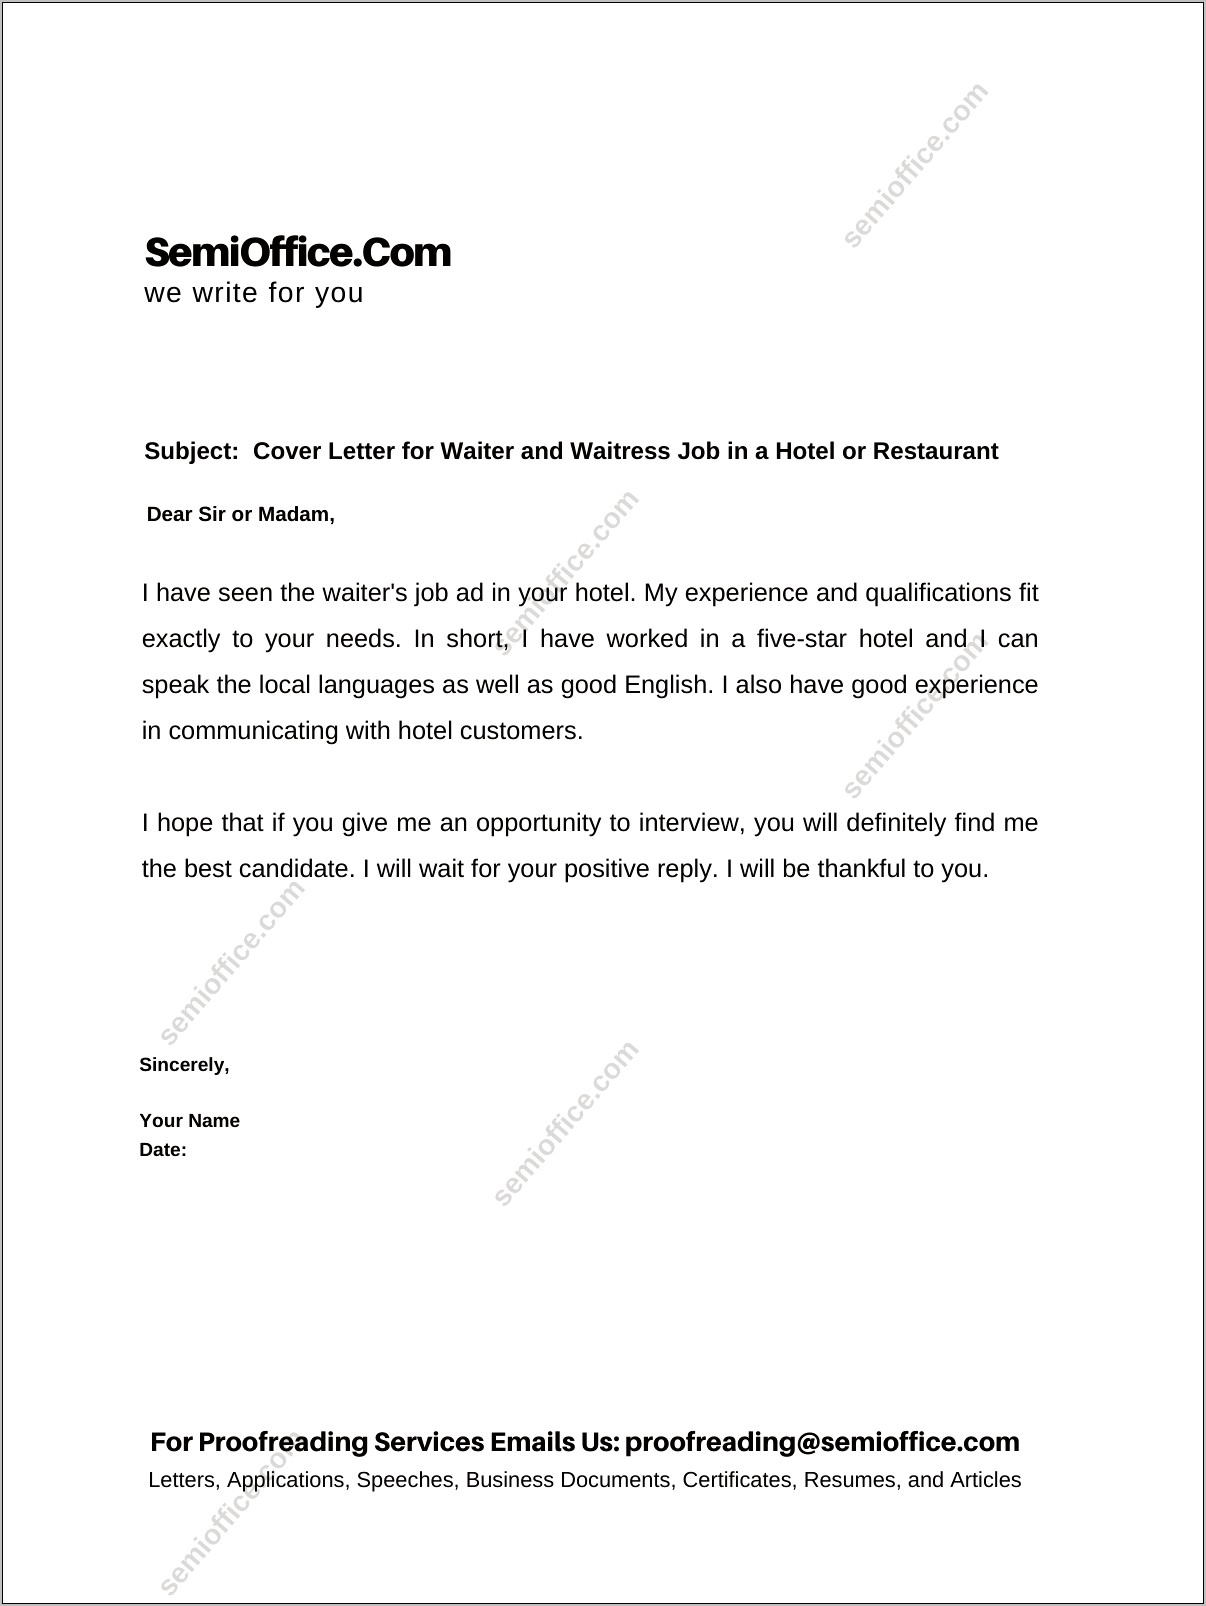 Resume Cover Letter For Restaurant Server